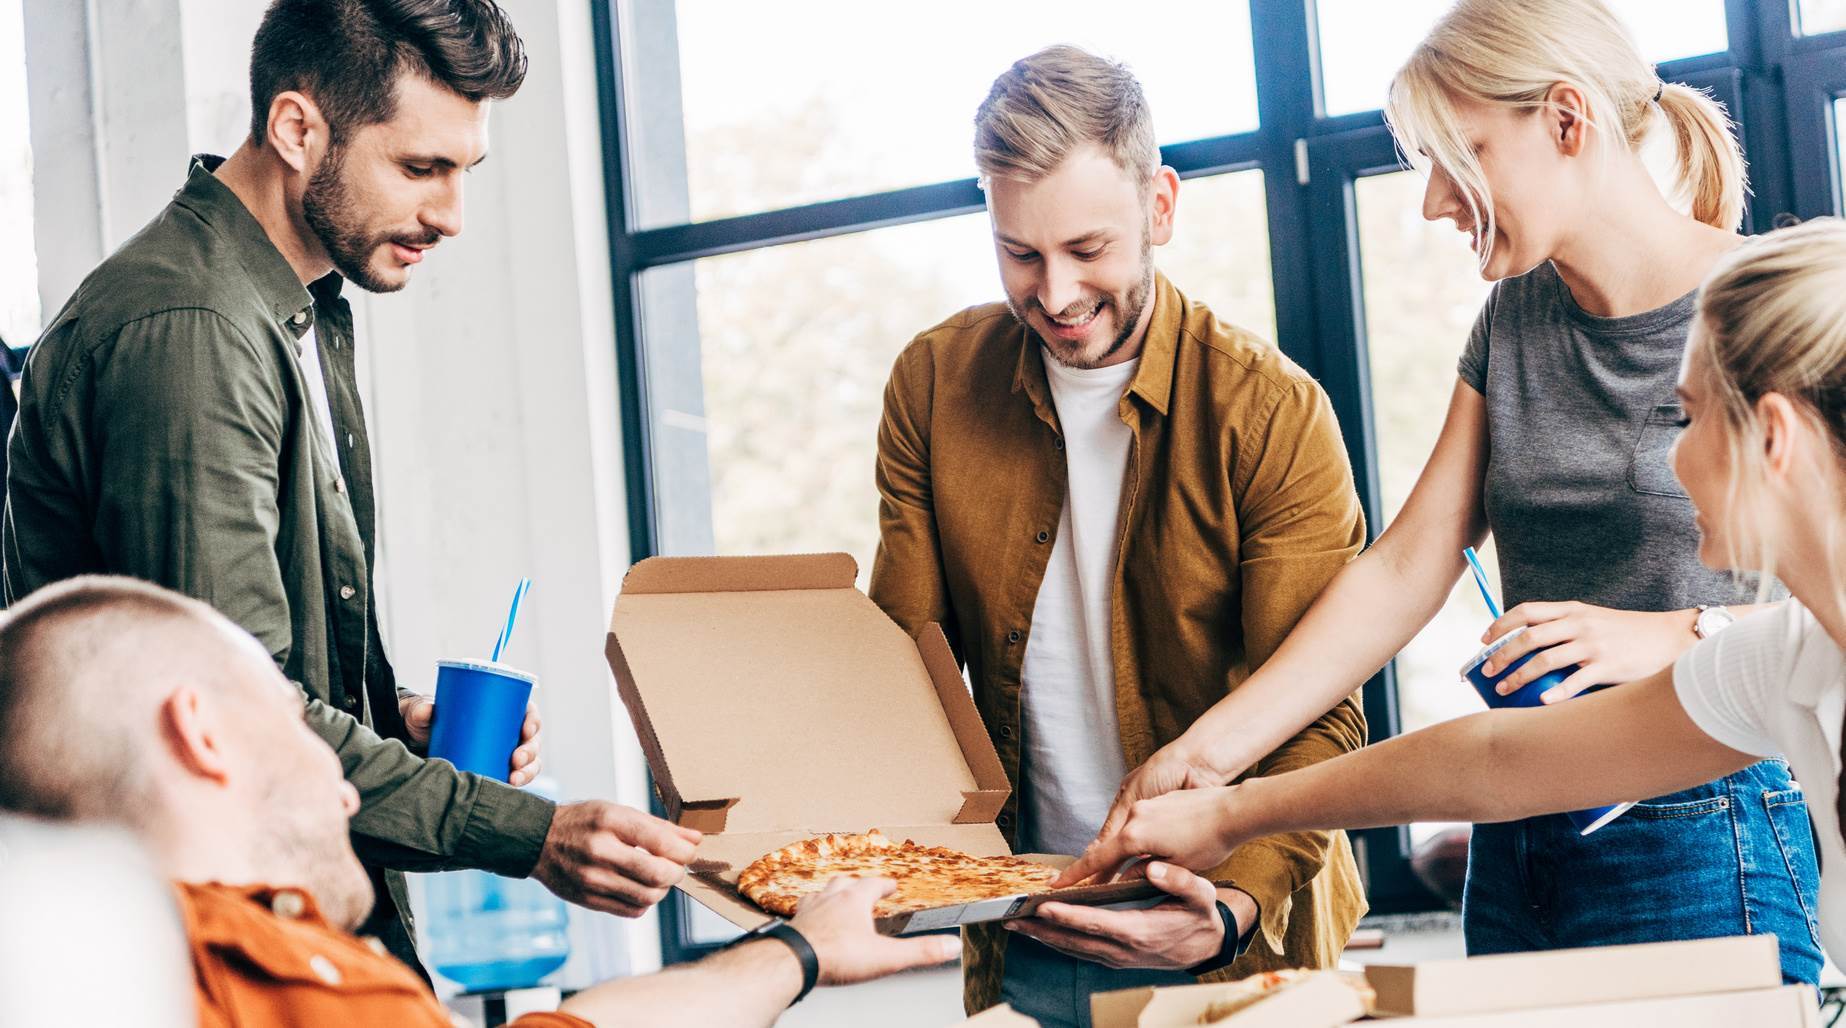 Impreza integracyjna w pracy| Domino's Pizza